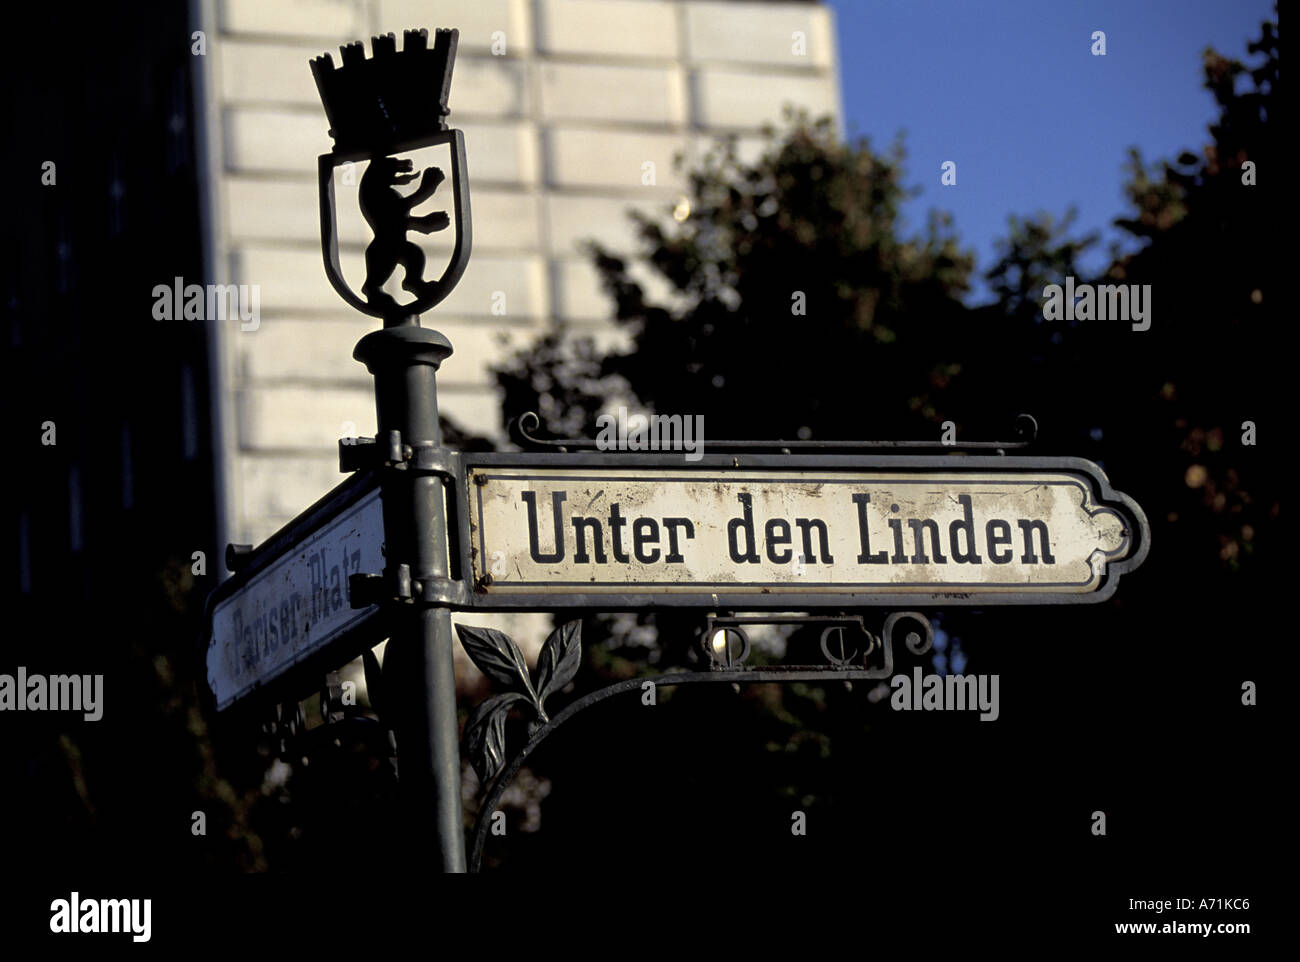 Germany, Berlin. Famous Berlin Boulevard - Unter den Linden. Stock Photo